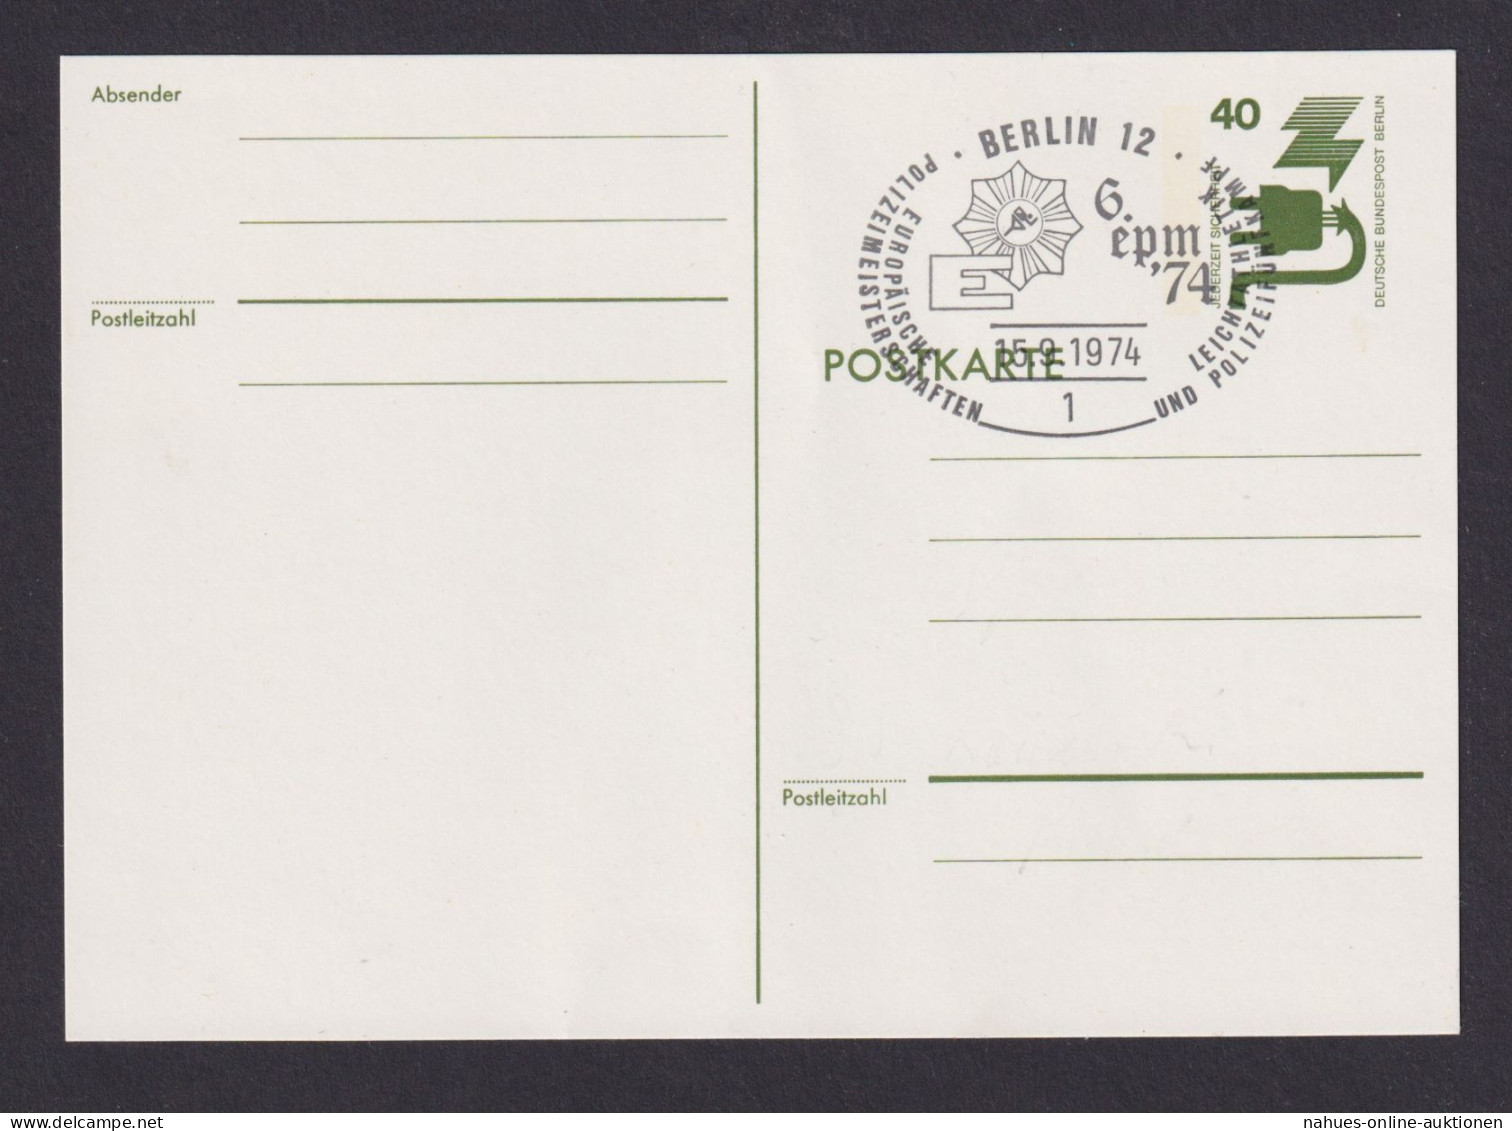 Briefmarken Berlin Ganzsache 40 Pfg. Unfallverhütung SST Berlin 12 Polizei - Storia Postale